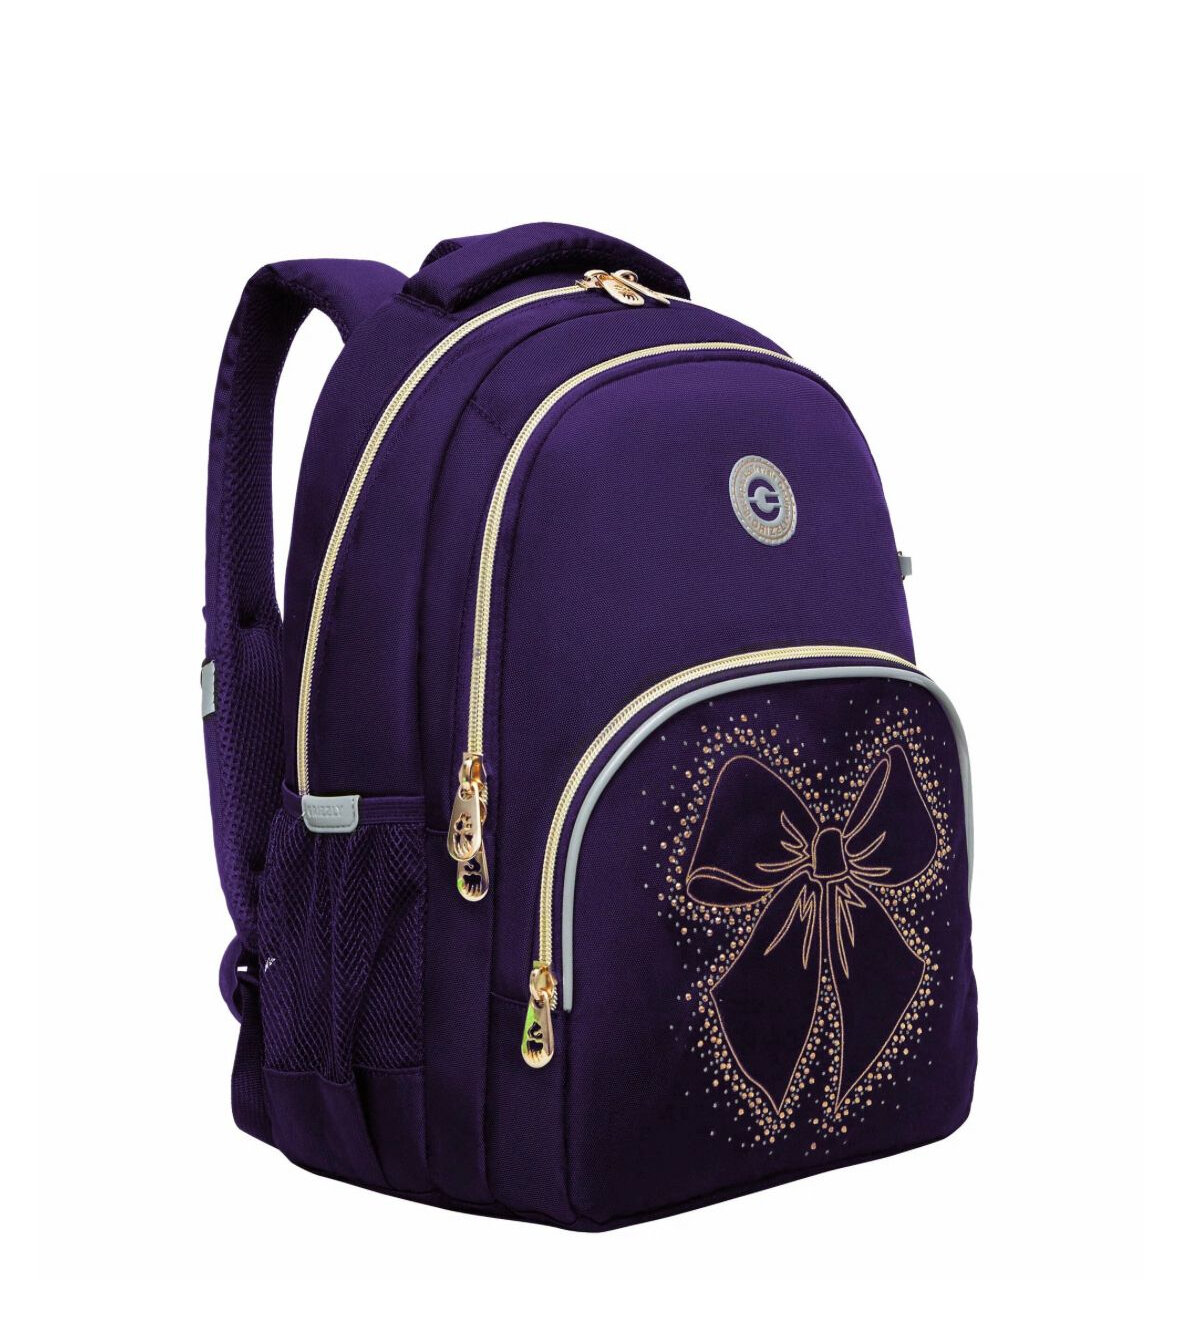 Рюкзак школьный Grizzly GRIZZLY с карманом для ноутбука 13", анатомической спинкой, для девочки, RG-460-5/3, фиолетовый